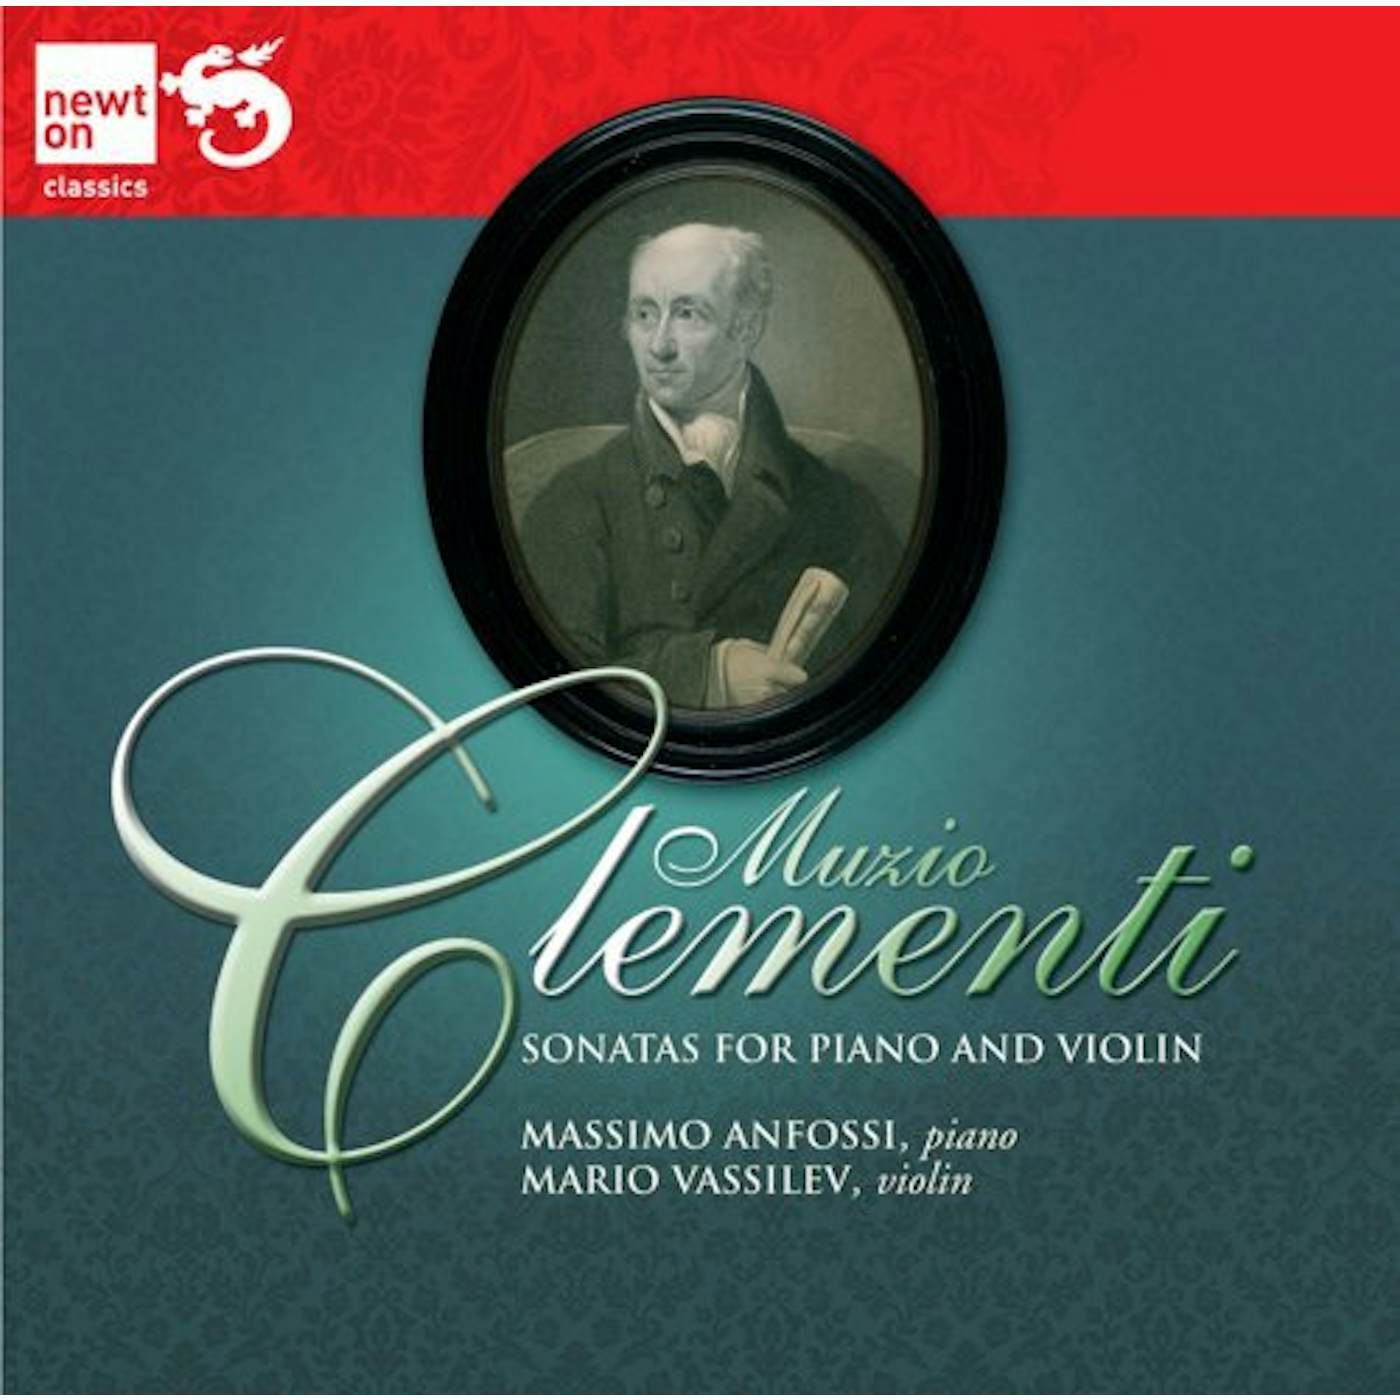 Clementi SONATAS FOR PIANO & VIOLIN CD